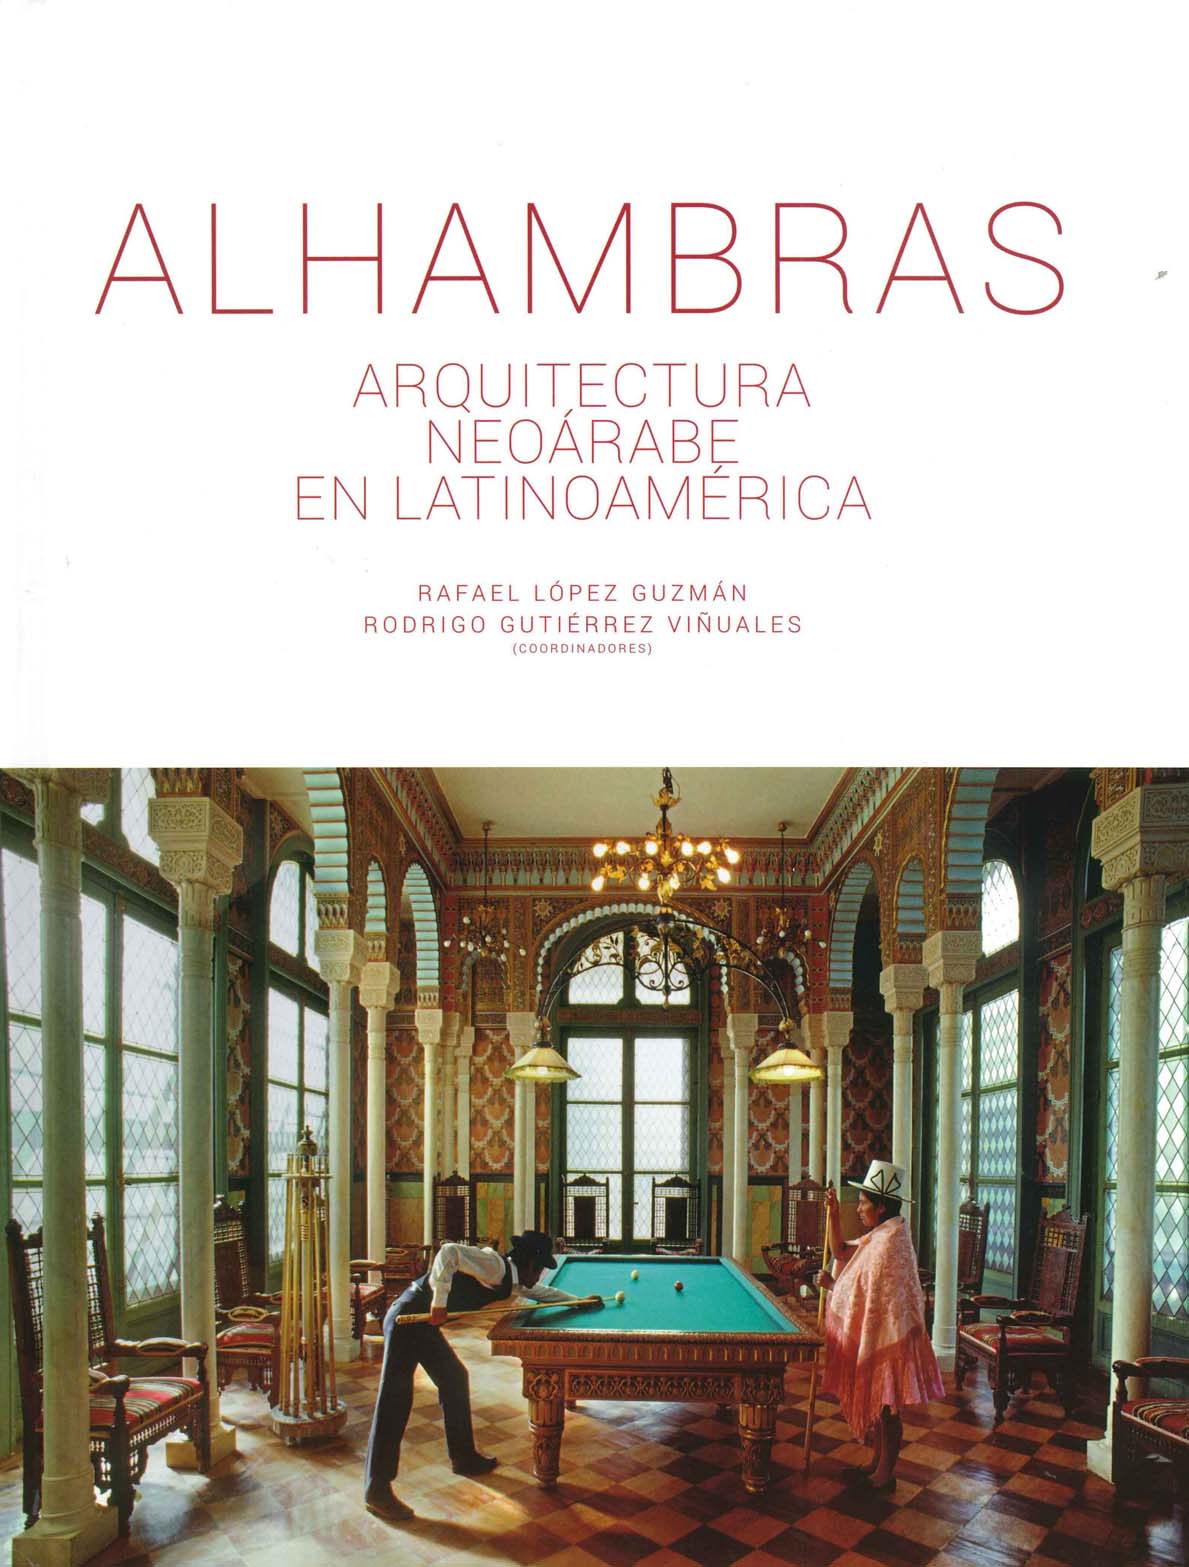 Alhambras: neo-Arabic architecture in Latin America